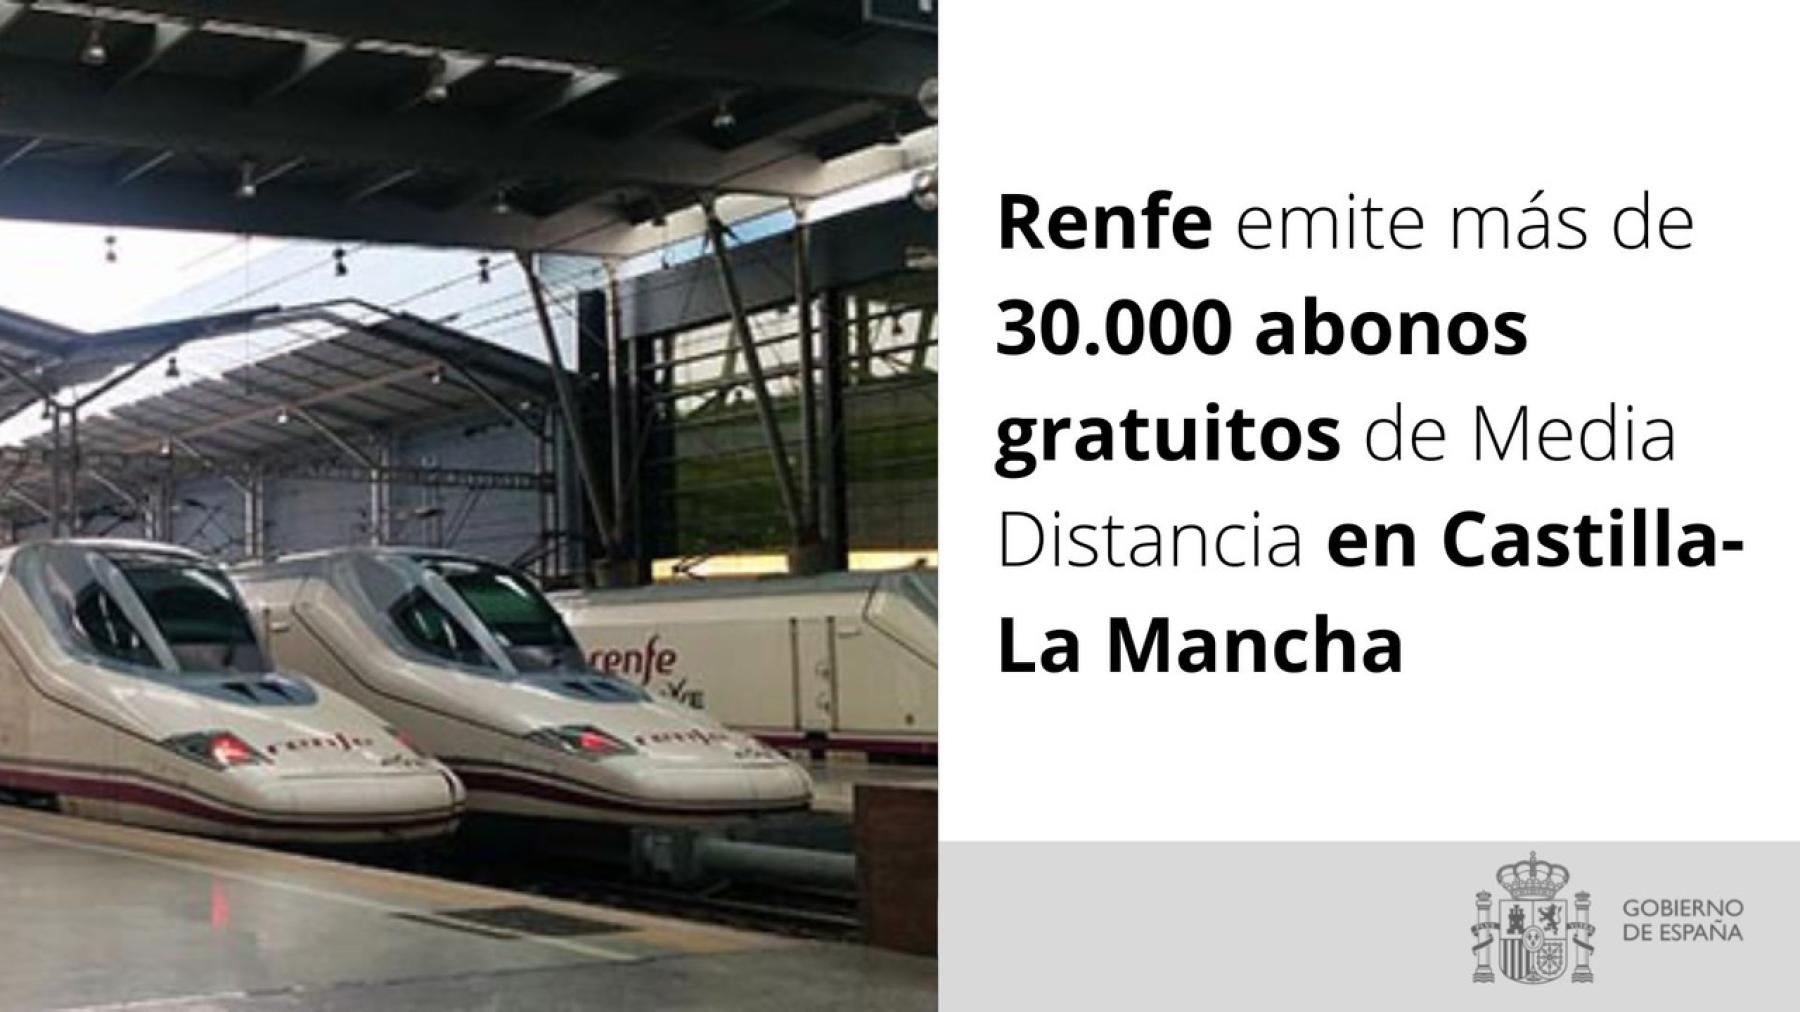 Renfe emite más de 30.000 abonos gratuitos de Media Distancia en Castilla-La Mancha